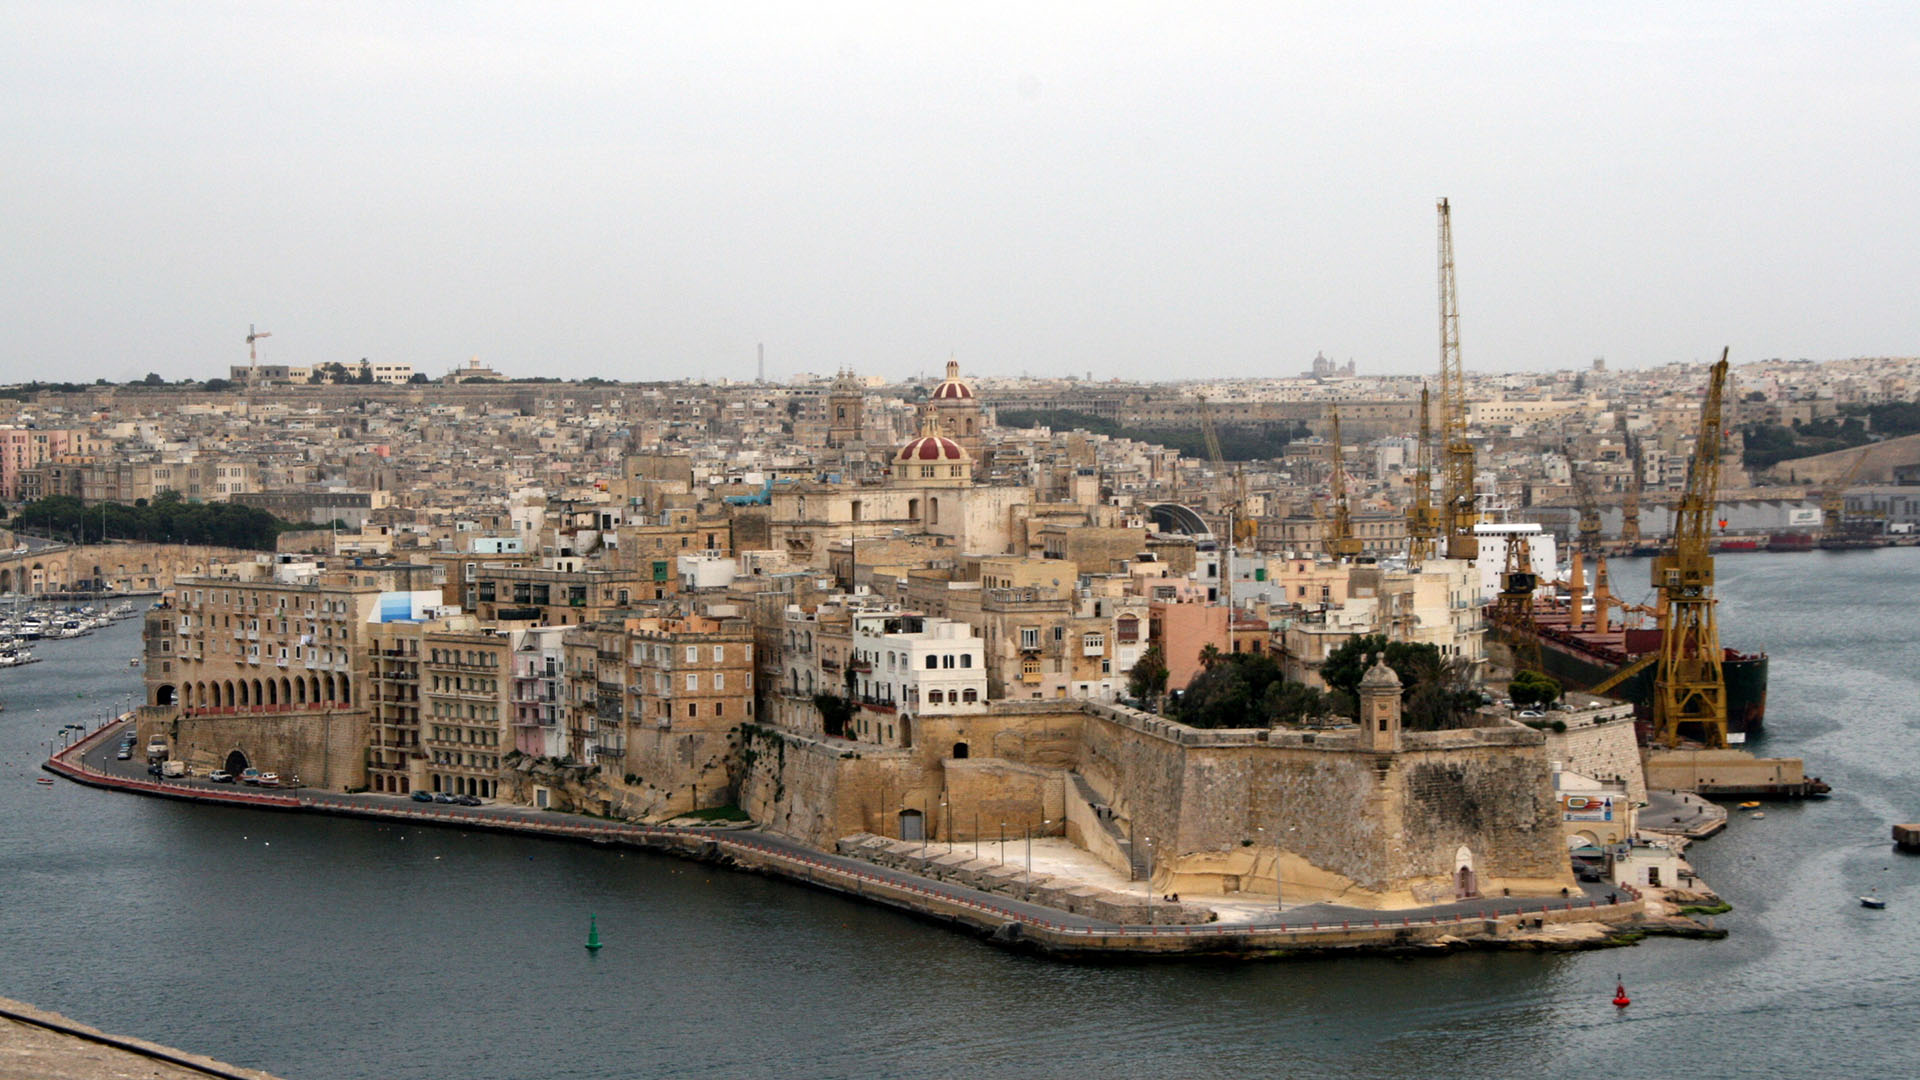 Le pape se rendra à Malte les 2 et 3 avril prochains | © Flickr/Ulrika/CC BY-ND 2.0